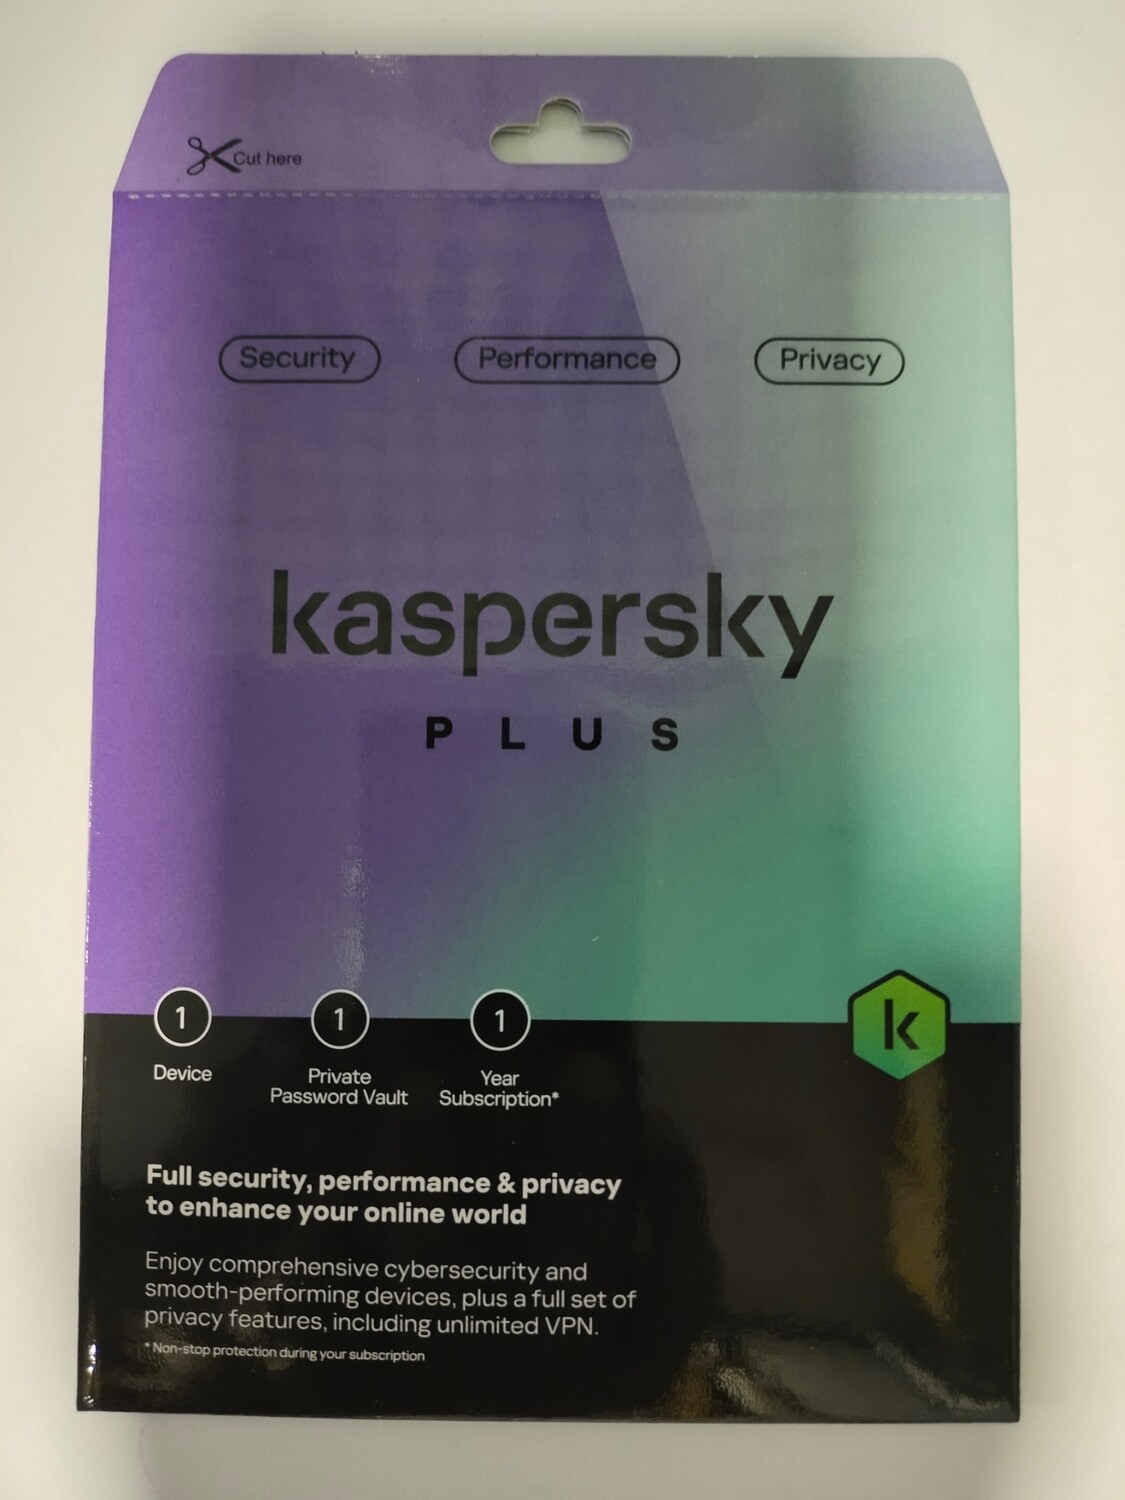 New, 10 User, 1 Year, Kaspersky Plus